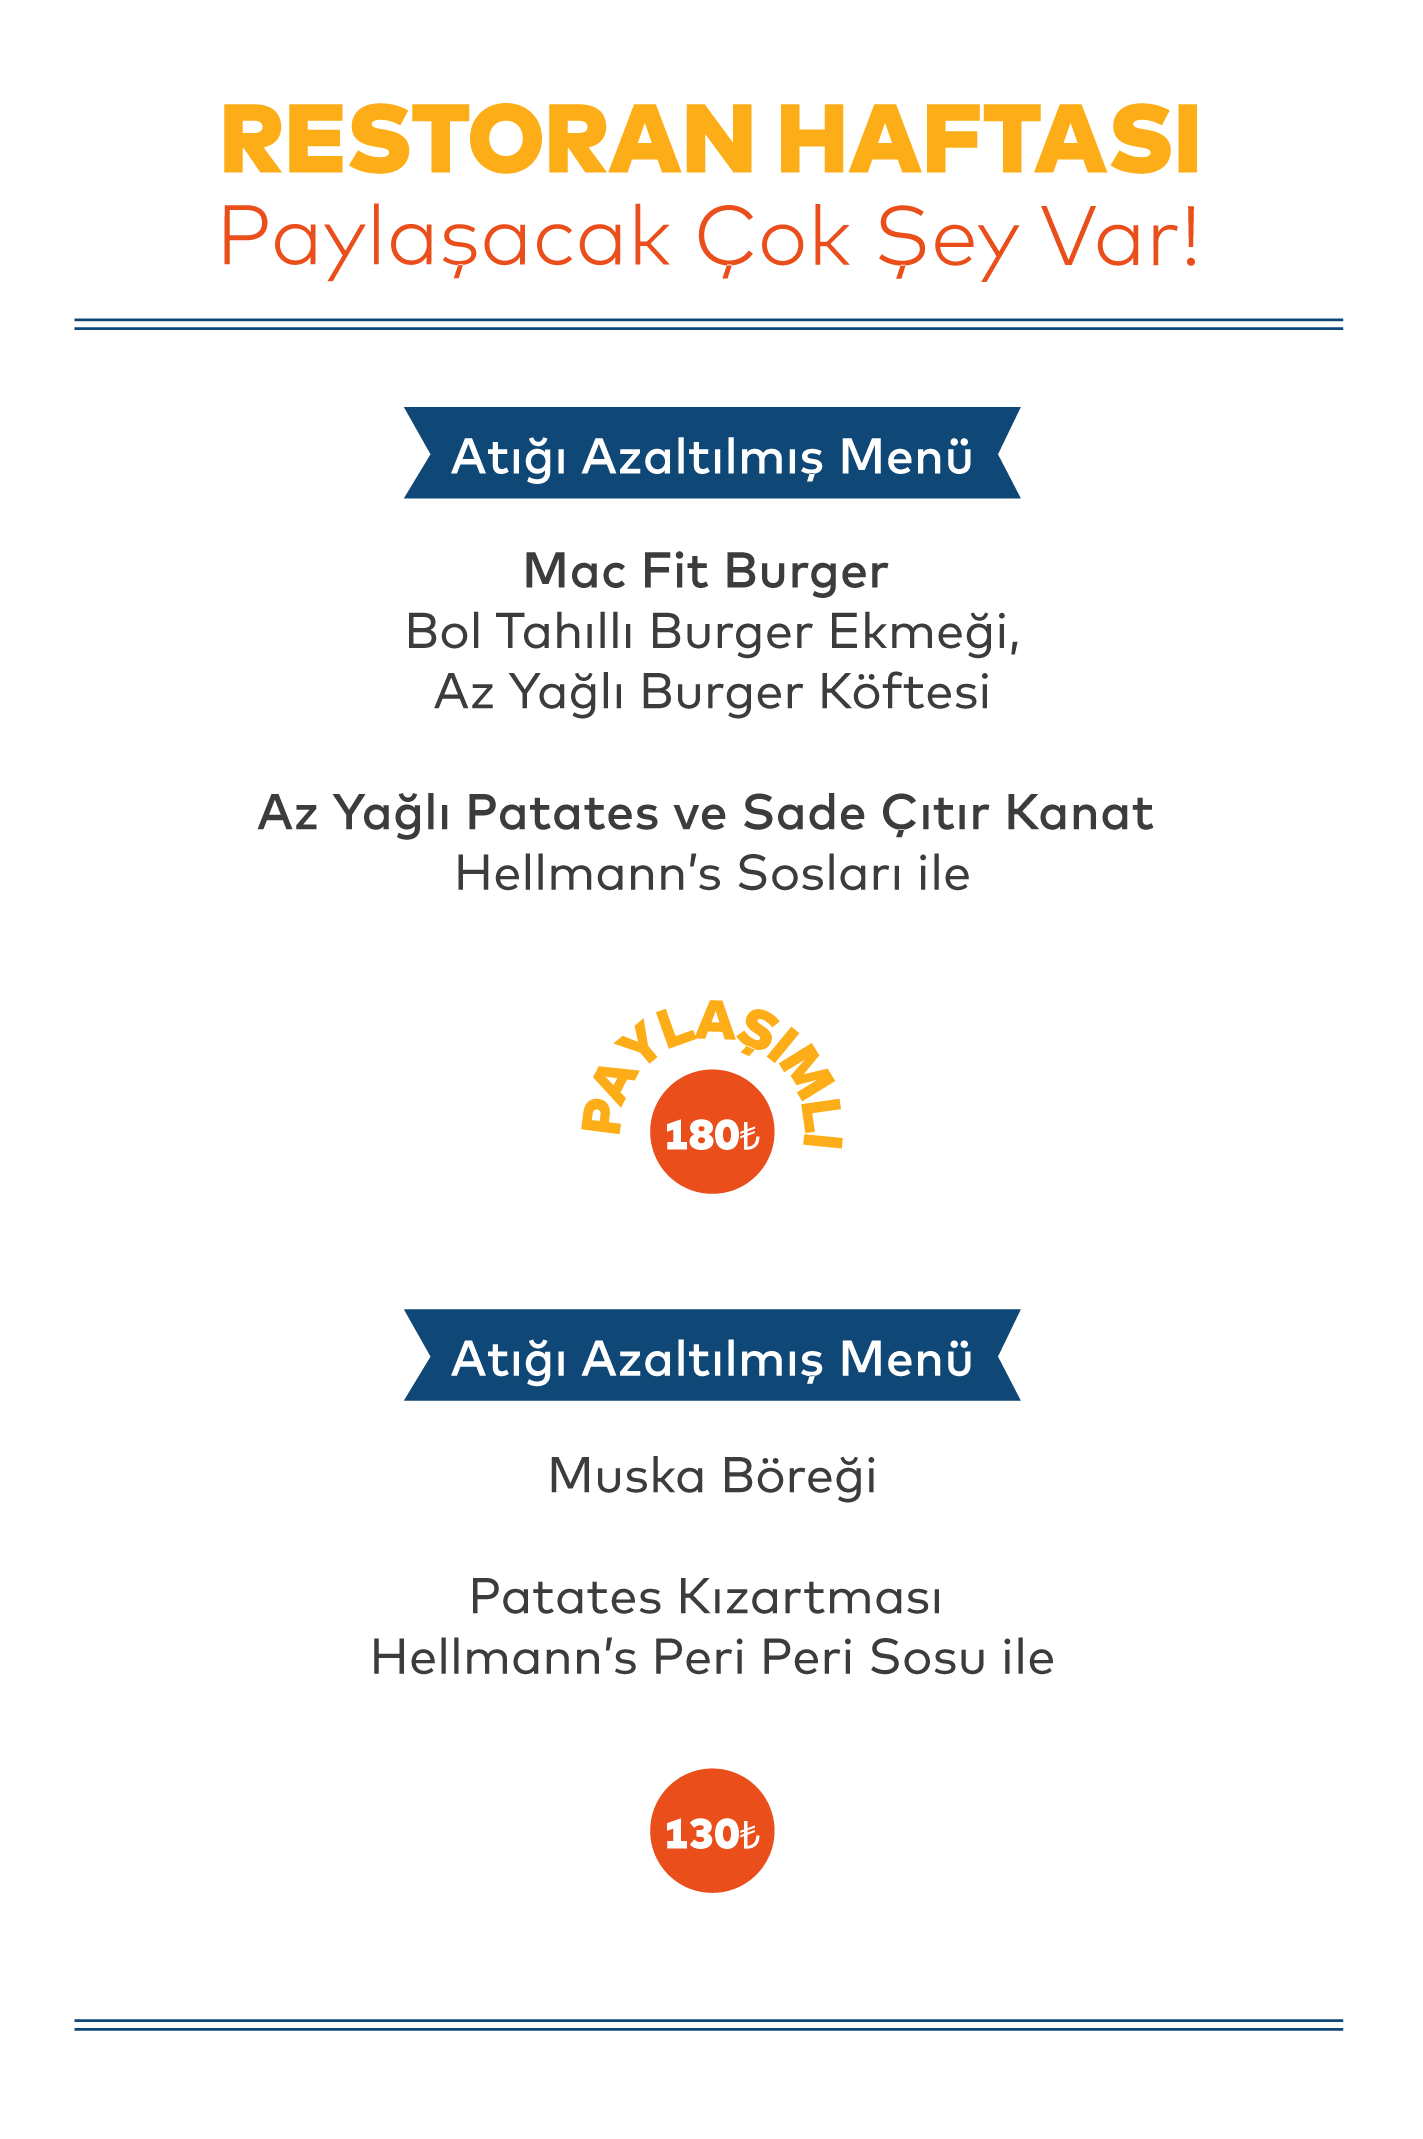 menu_crazyburger